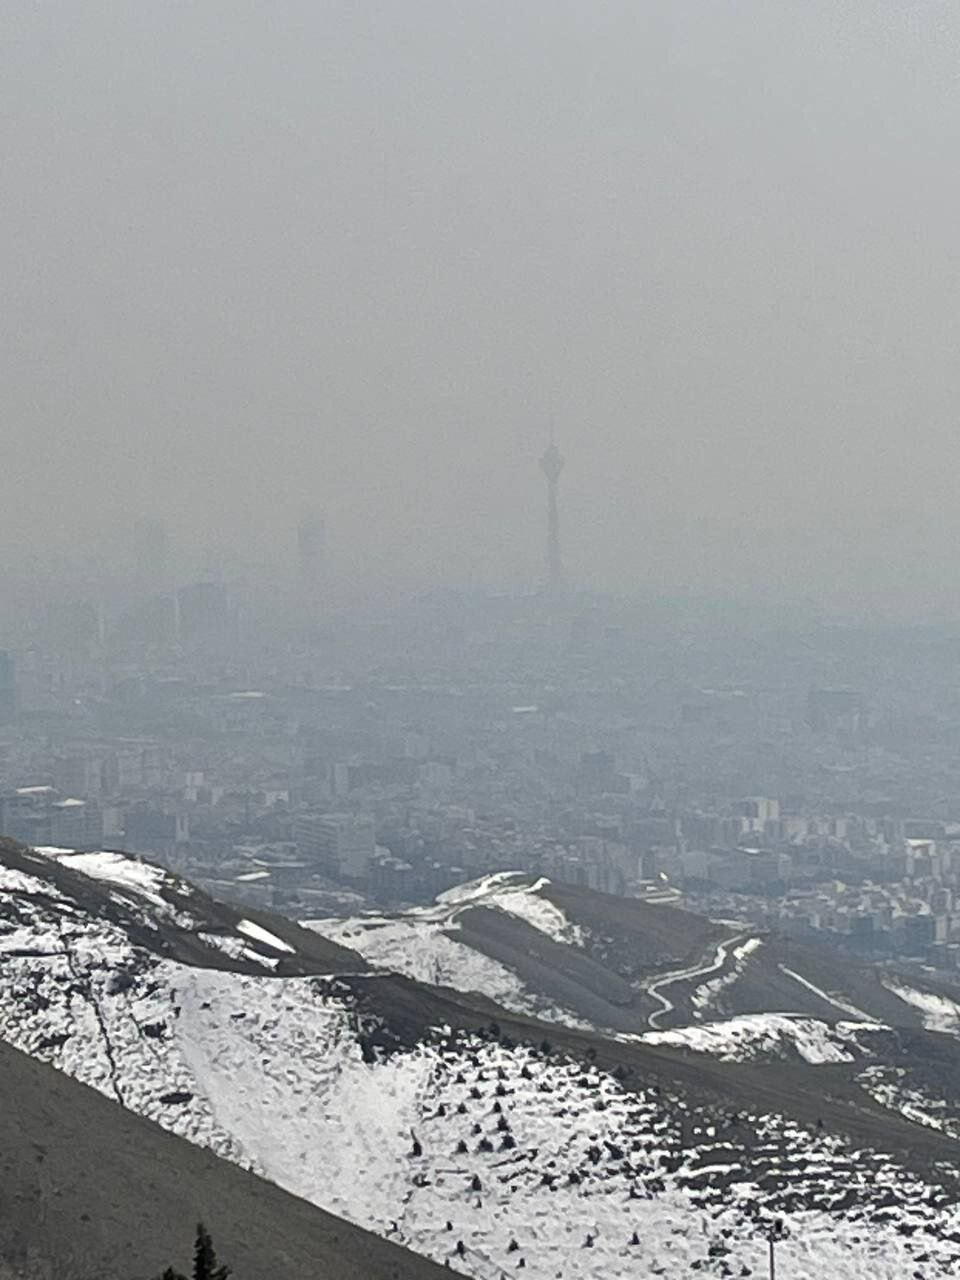 تصویر وحشتناک از آلودگی هوای تهران در ۱۲ اسفند